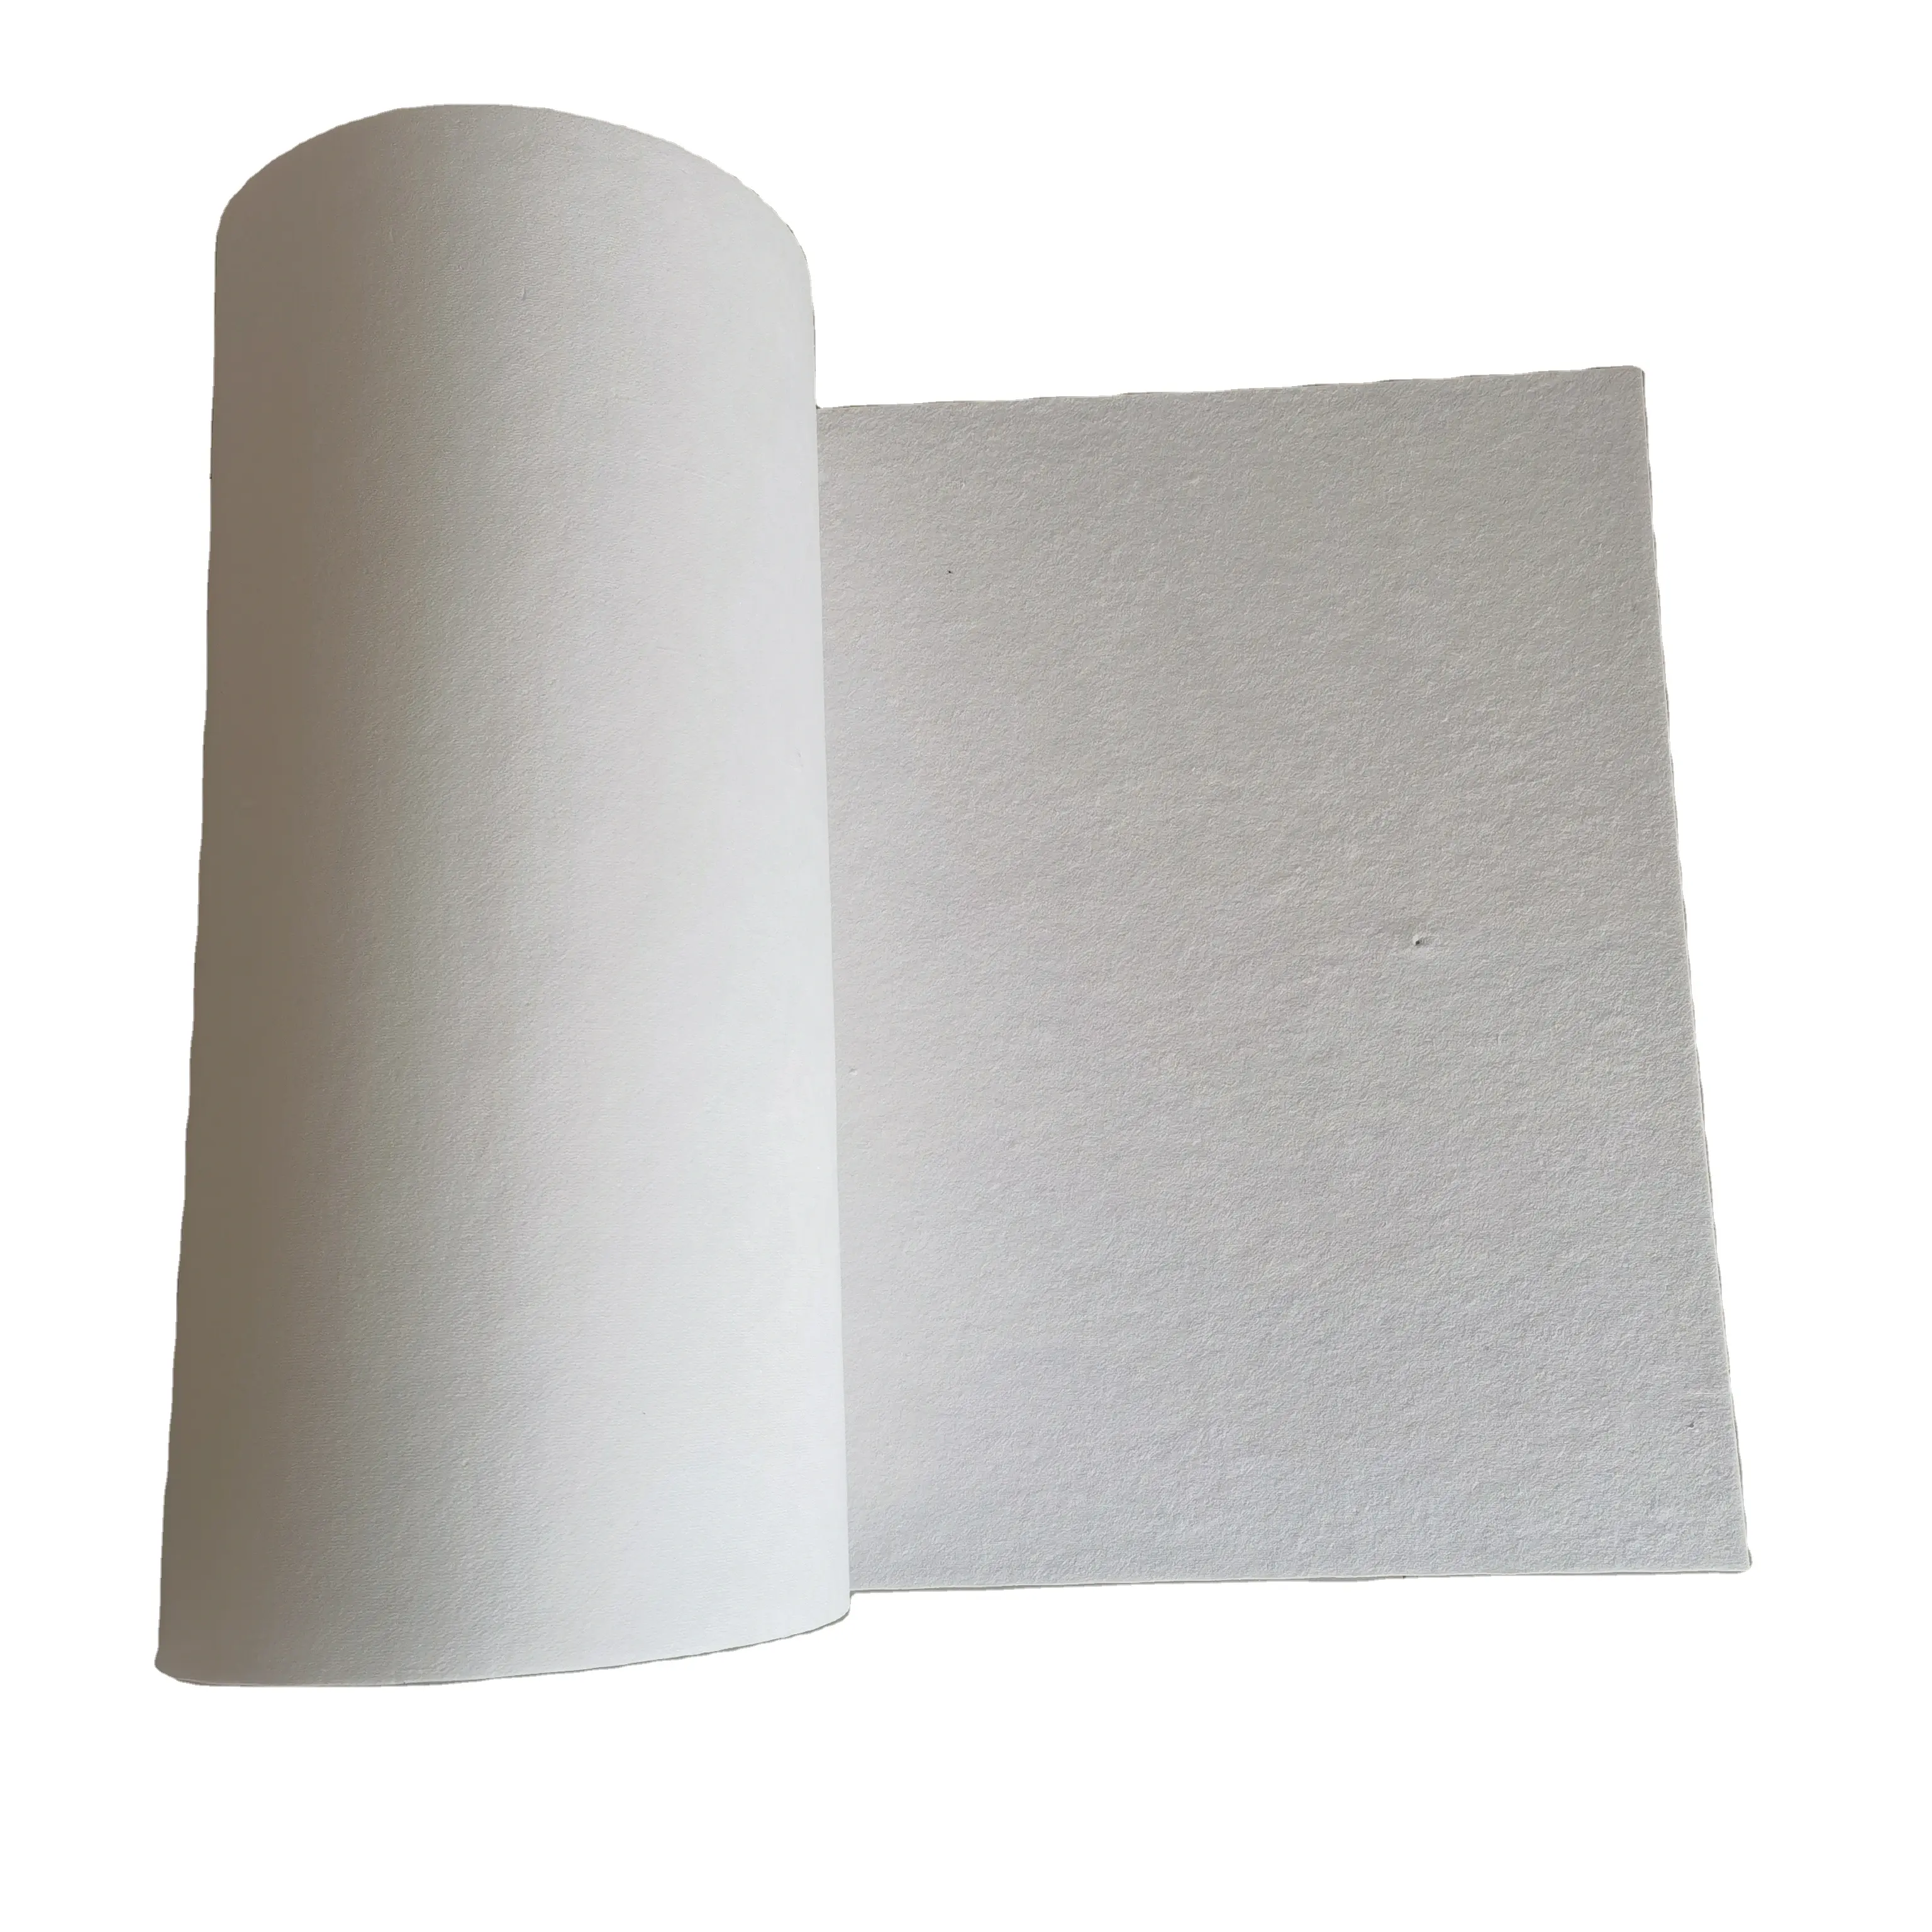 Ketebalan 0.5-12mm kertas kaowool insulasi panas penyegelan kertas serat keramik untuk pintu api